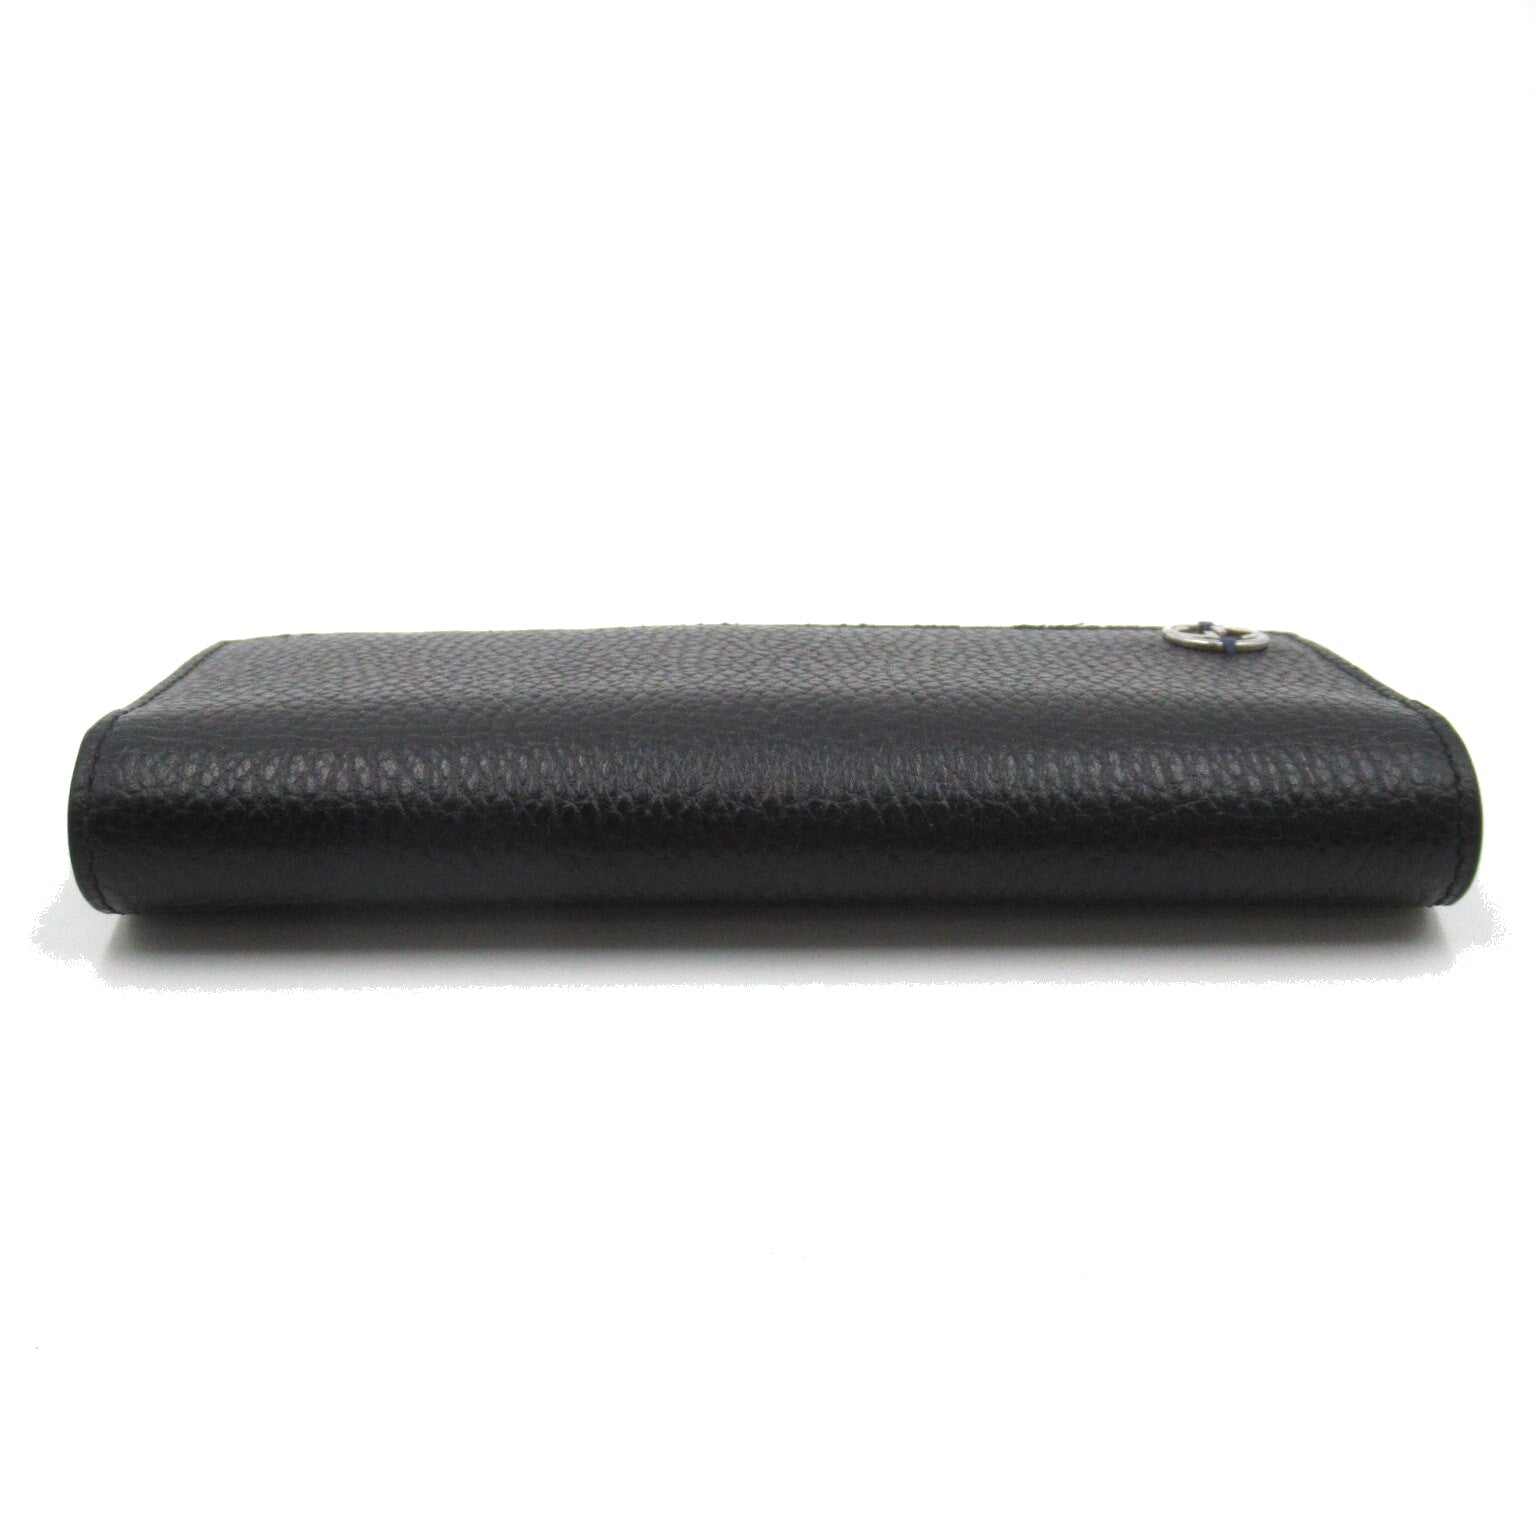 Gucci Interlocking G Long Wallet Double Fold Wallet Leather  Wallet Black/Blue 610467